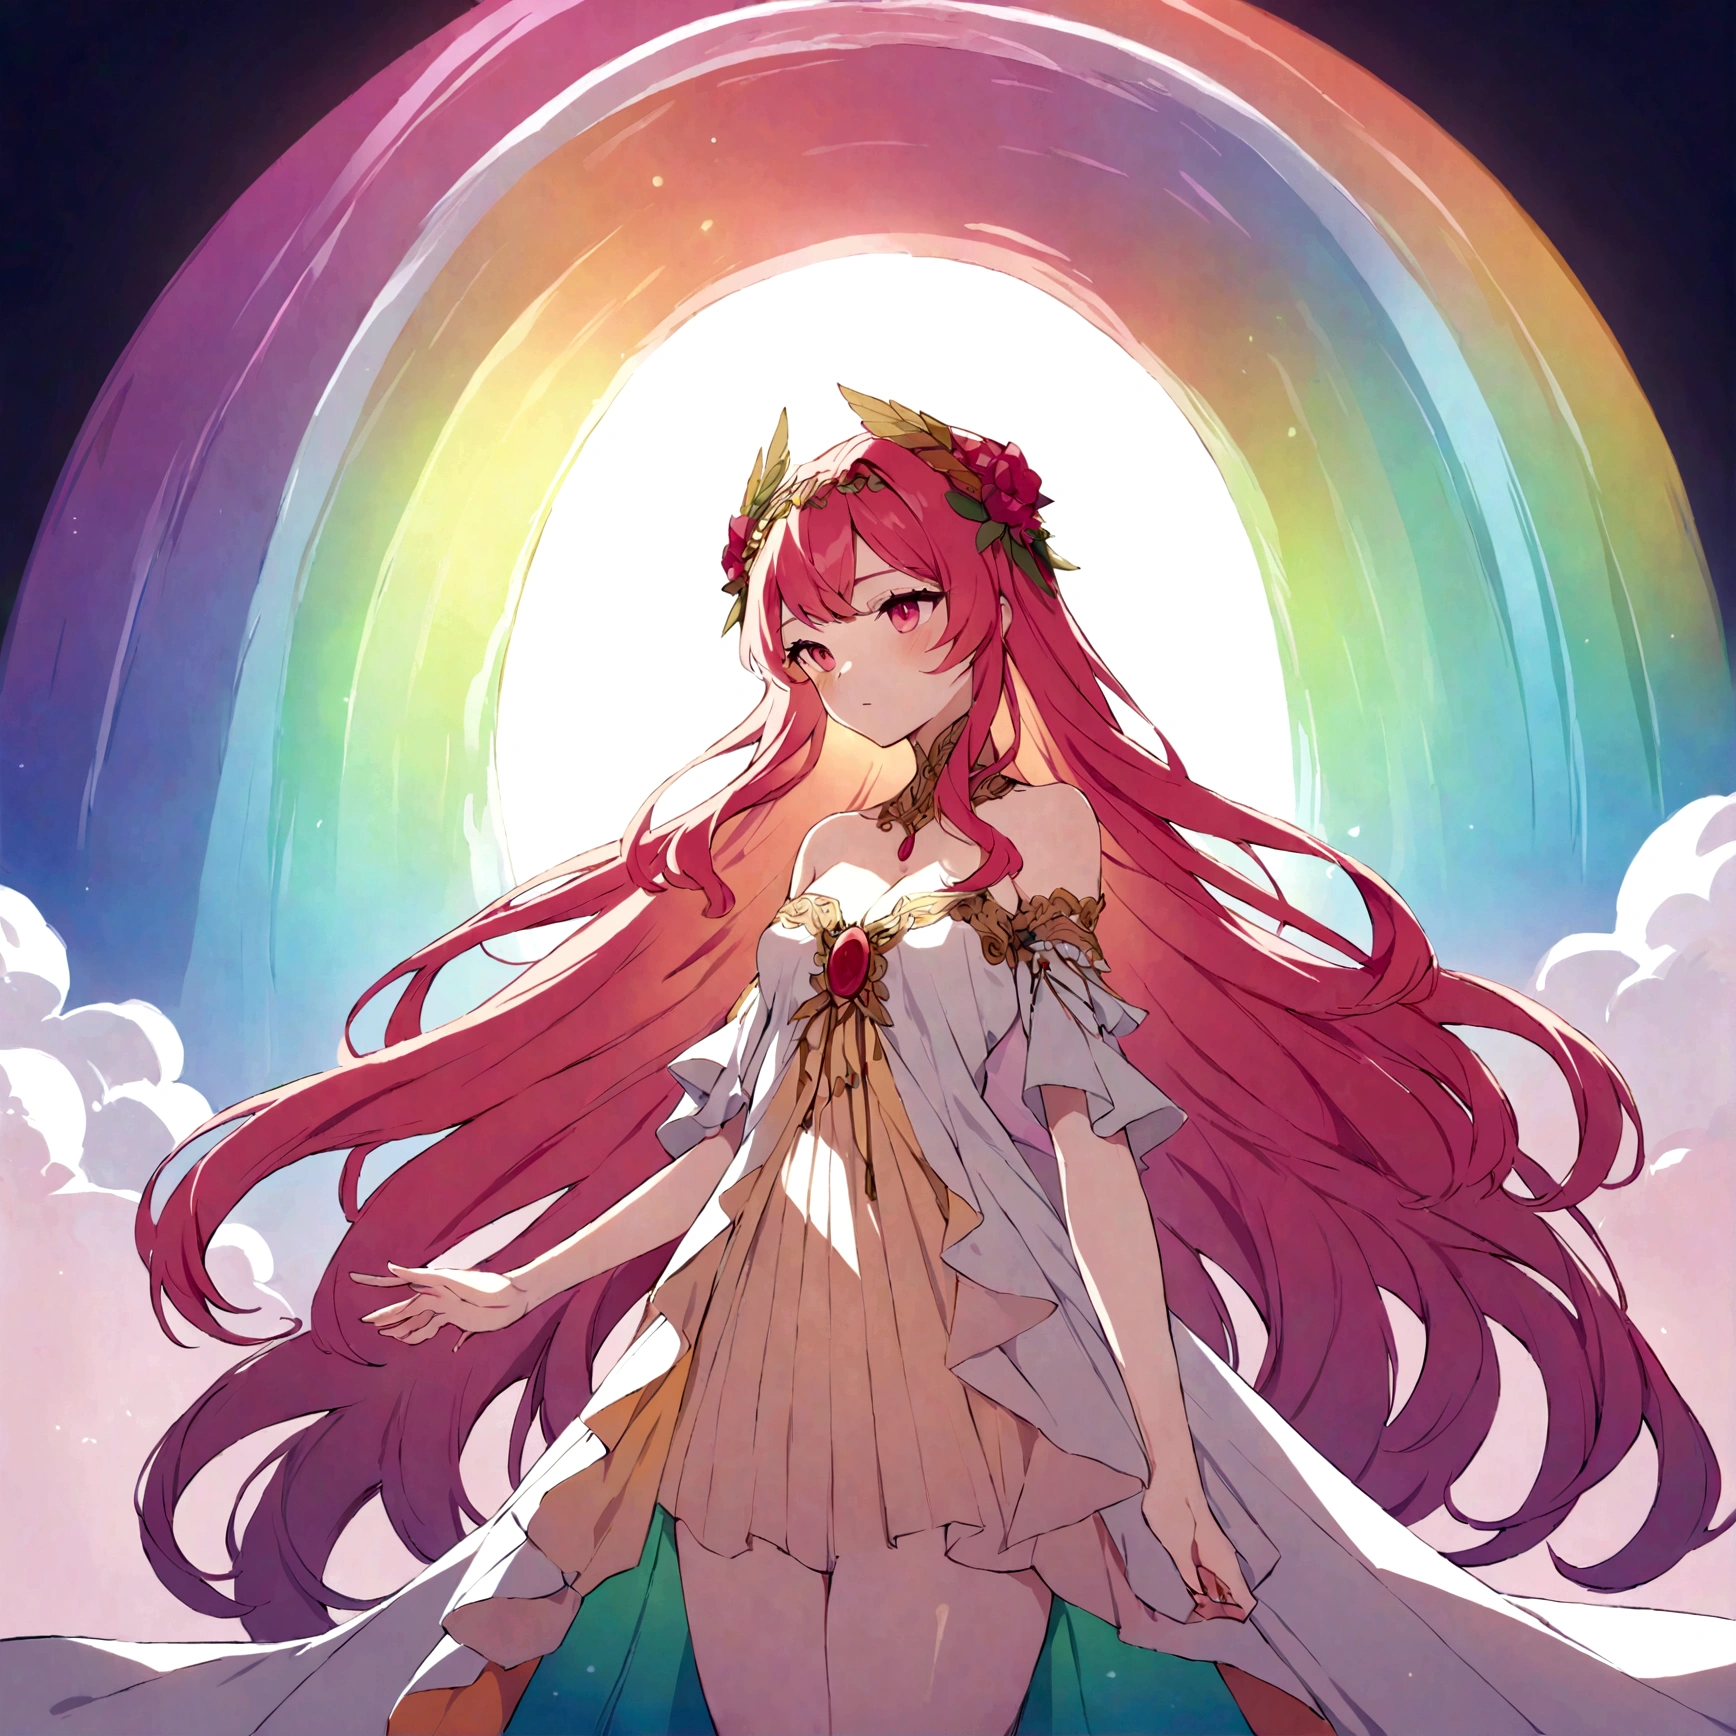 eine Regenbogenversion der Göttin Persephone